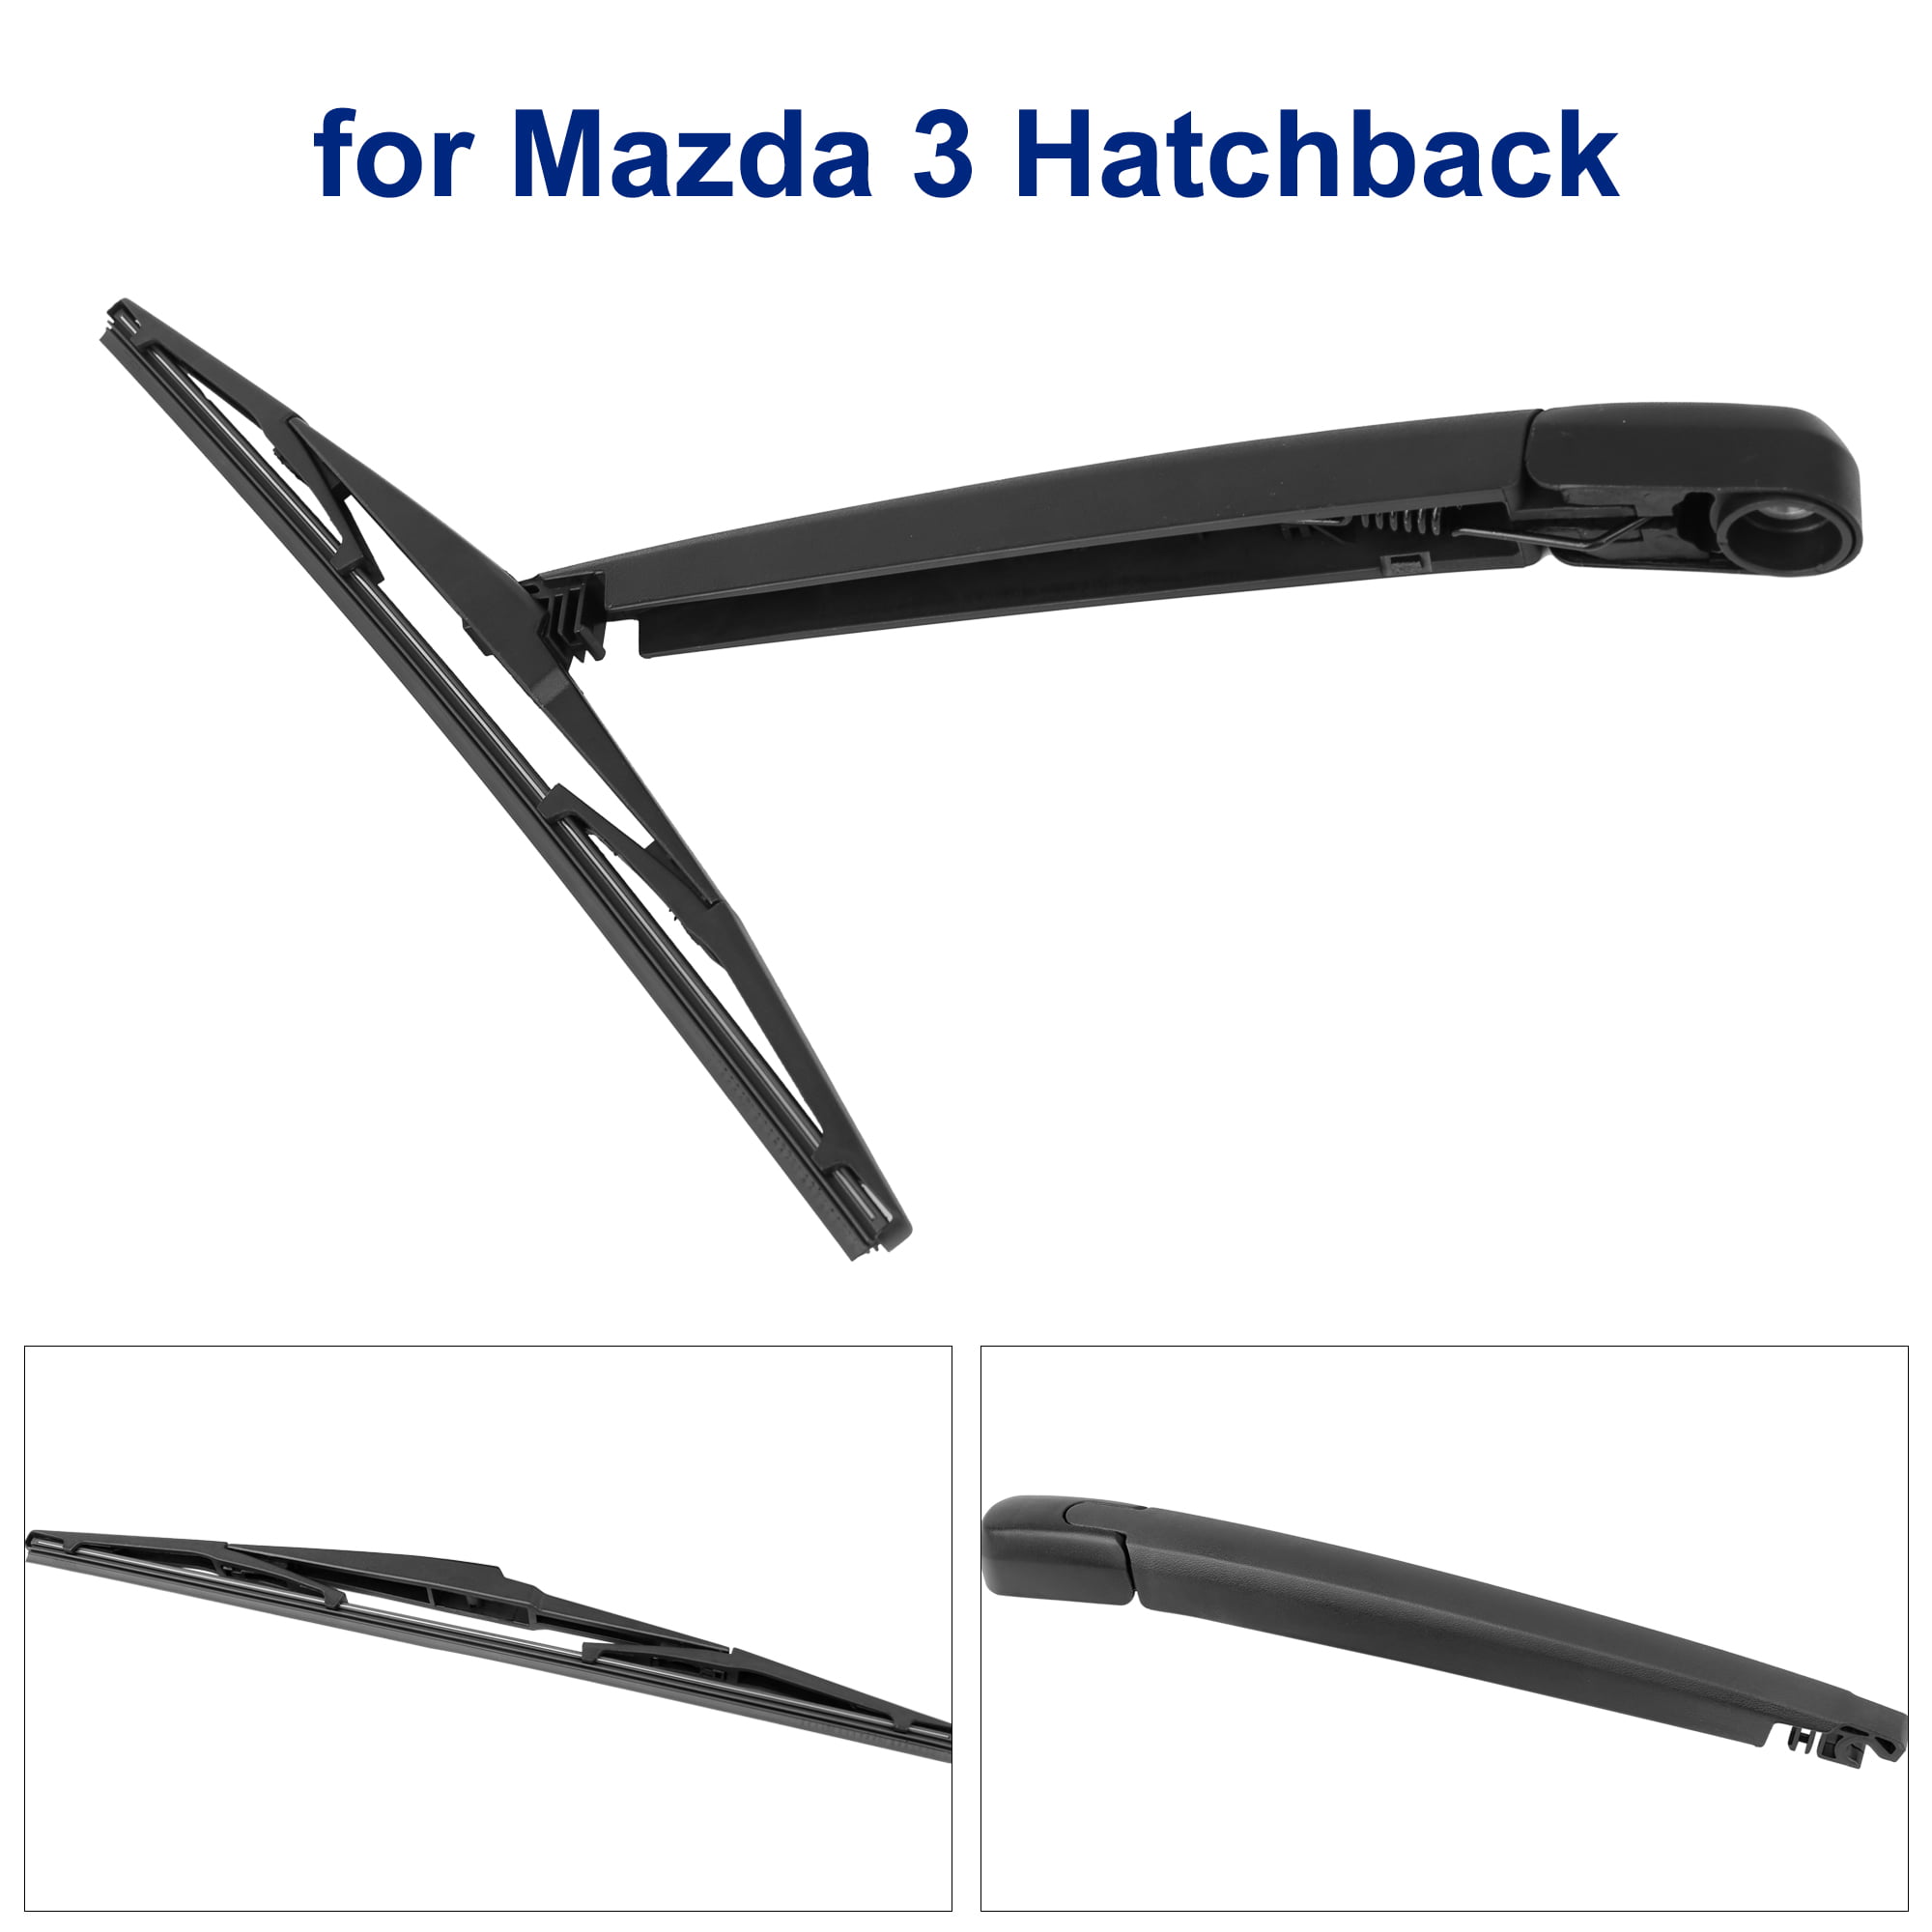 2012 Mazda 3 Hatchback Wiper Blade Size - Ultimate Mazda 2018 Mazda 3 Hatchback Windshield Wiper Size